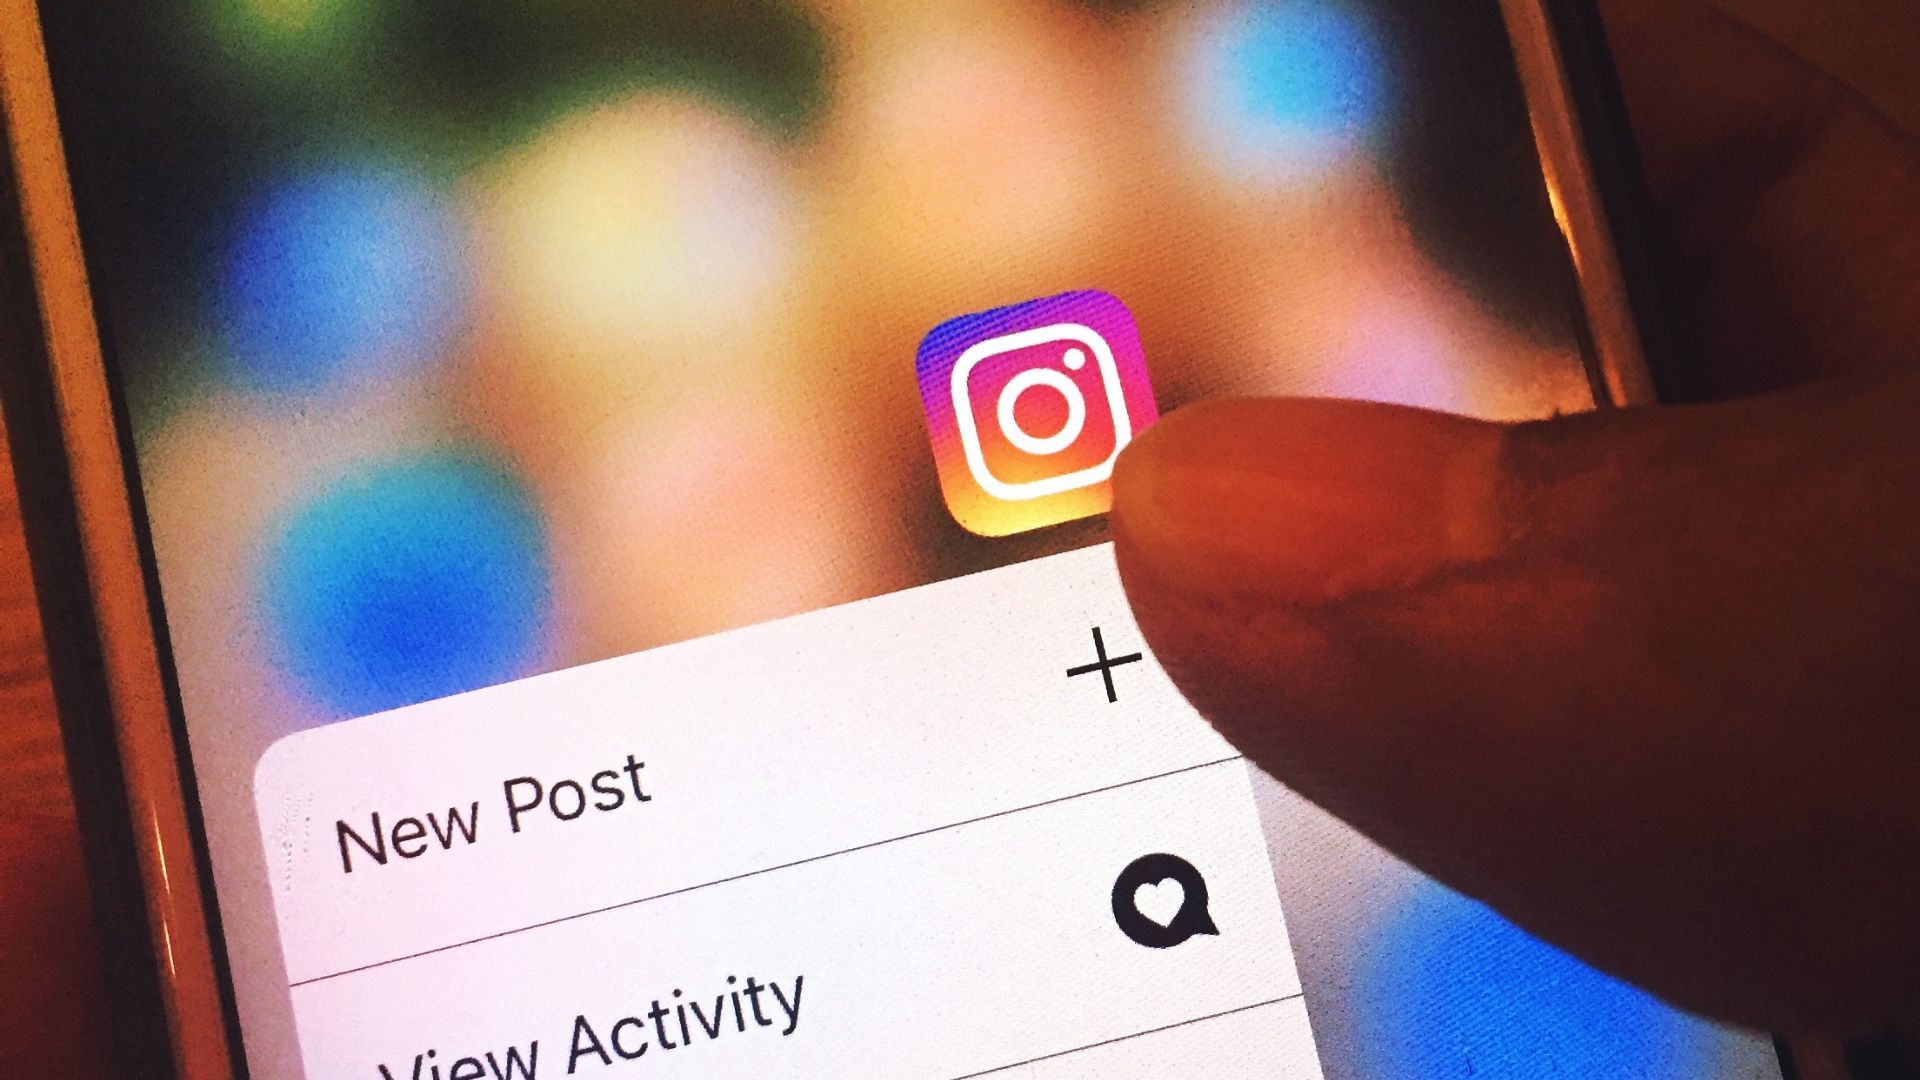 Instagram dificulta envio de imagens em mensagens privadas sem consentimento